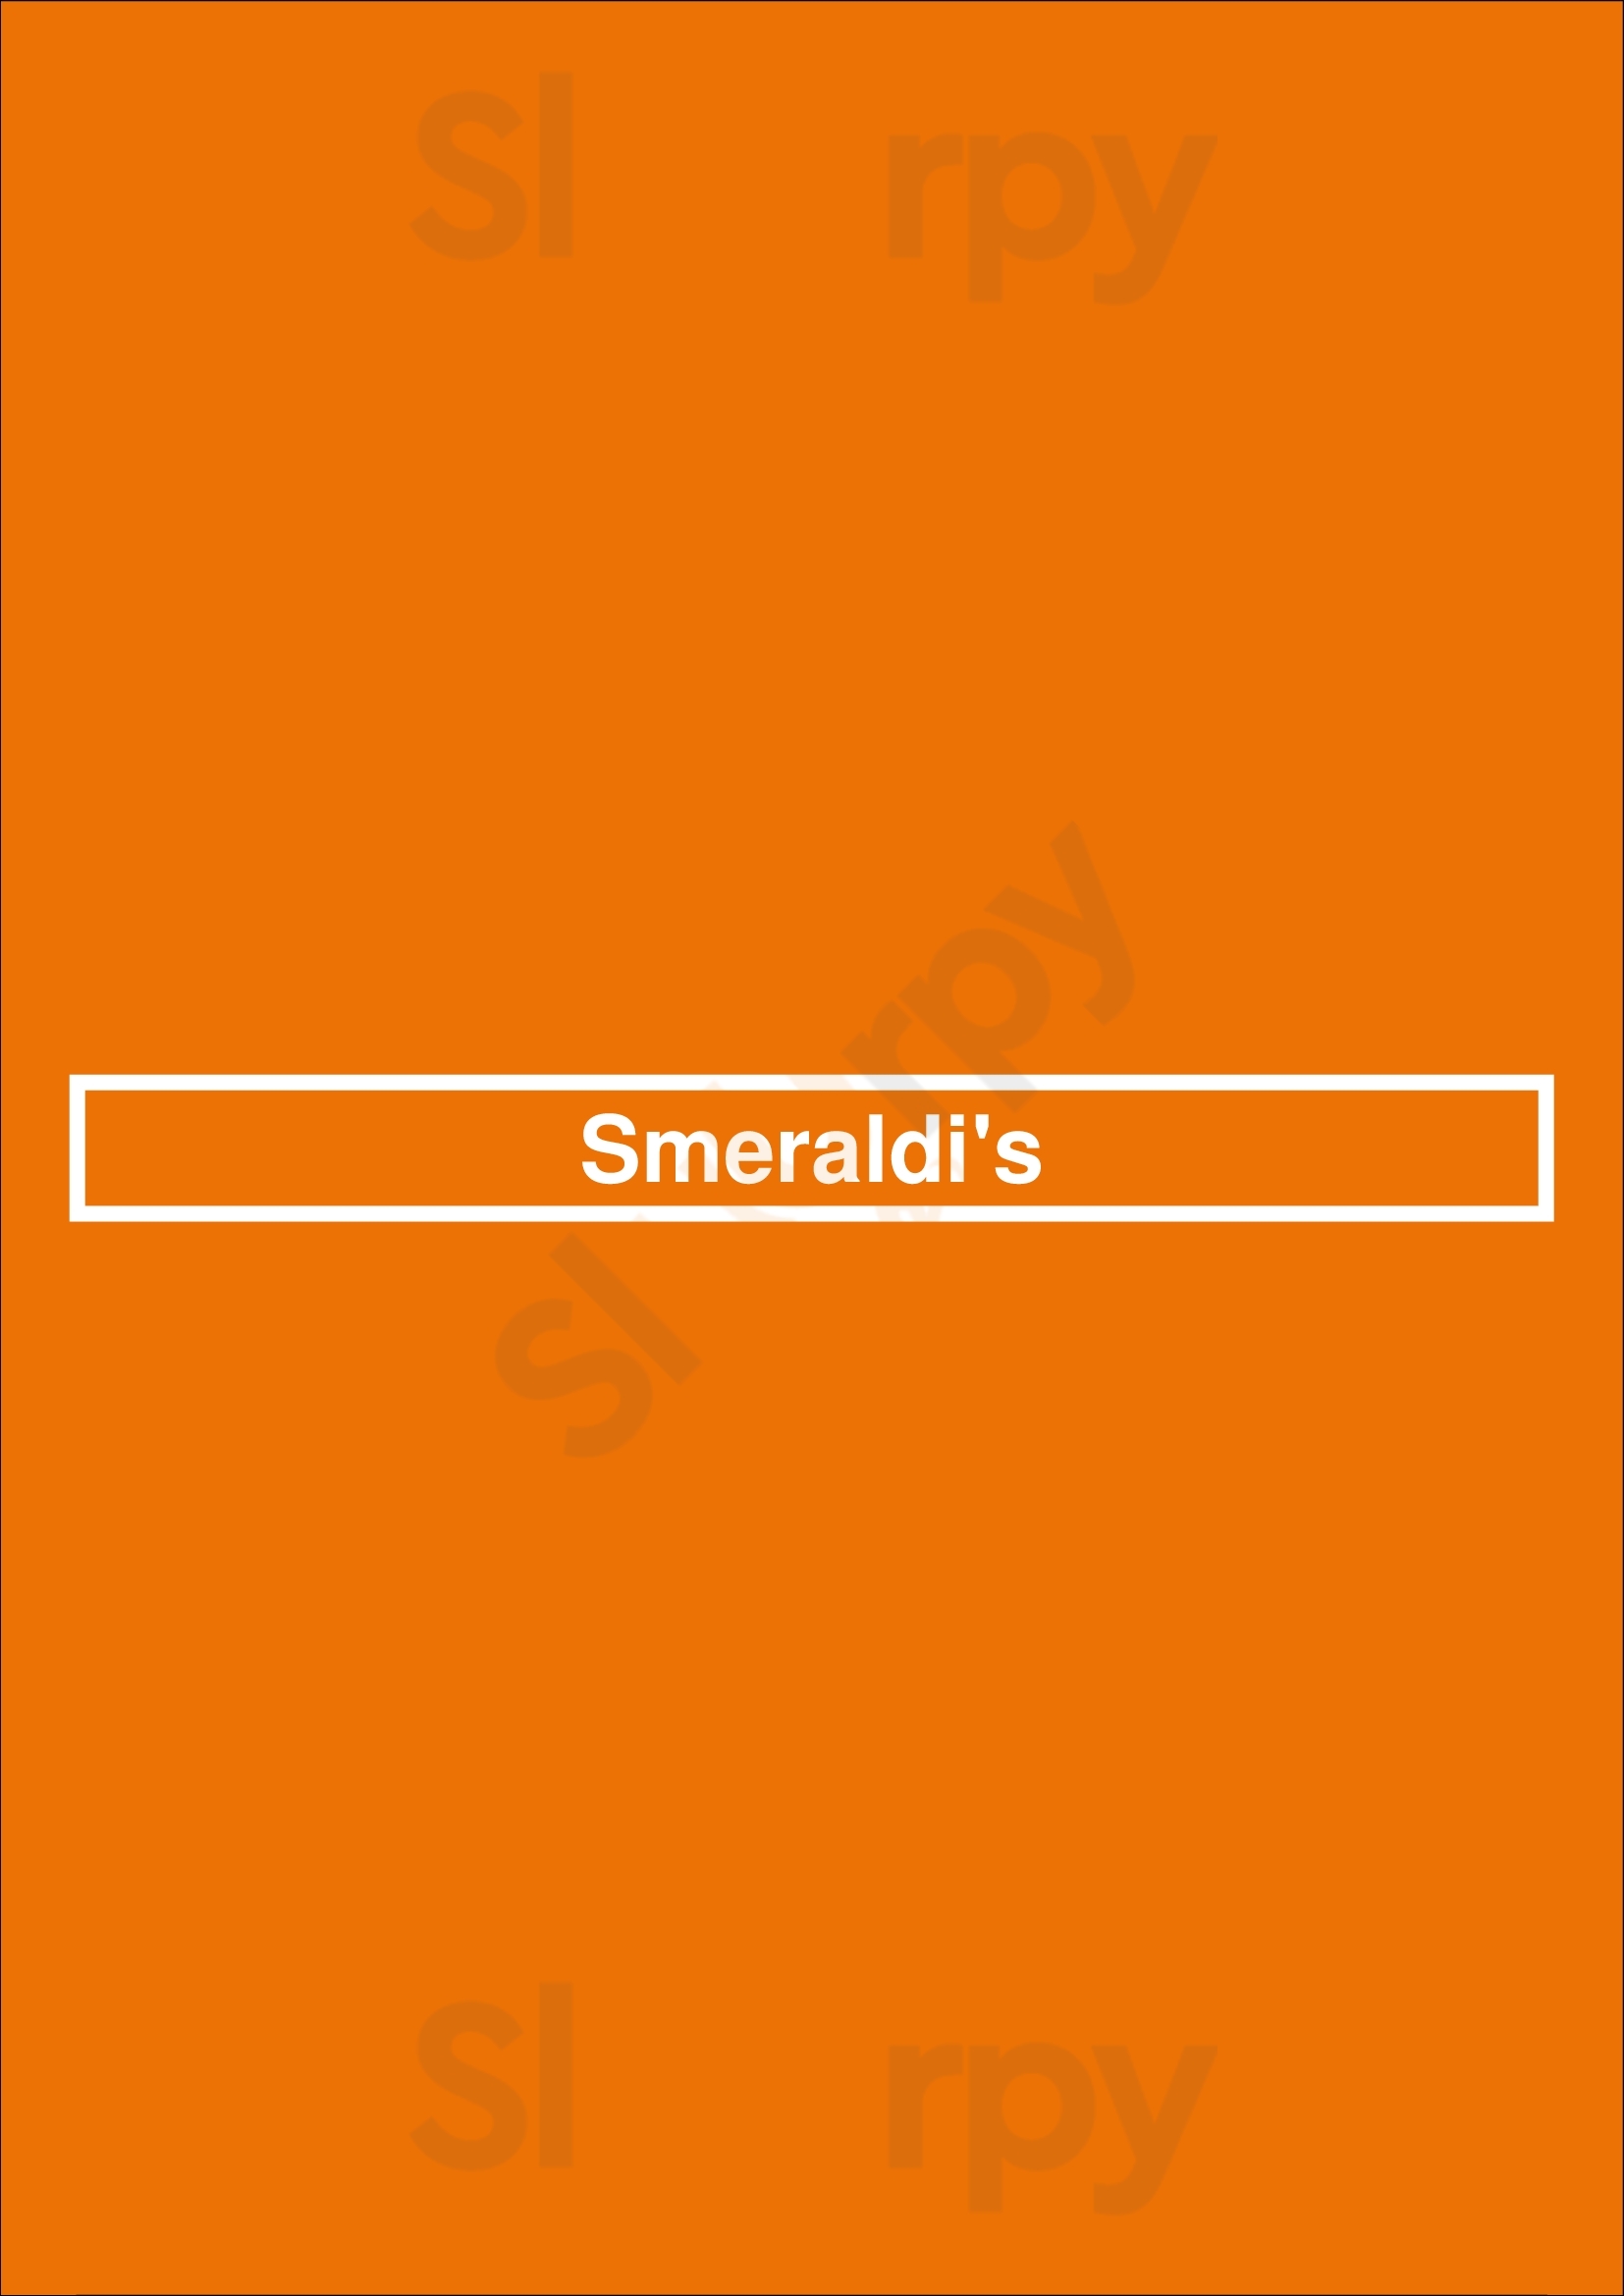 Smeraldi's Los Angeles Menu - 1